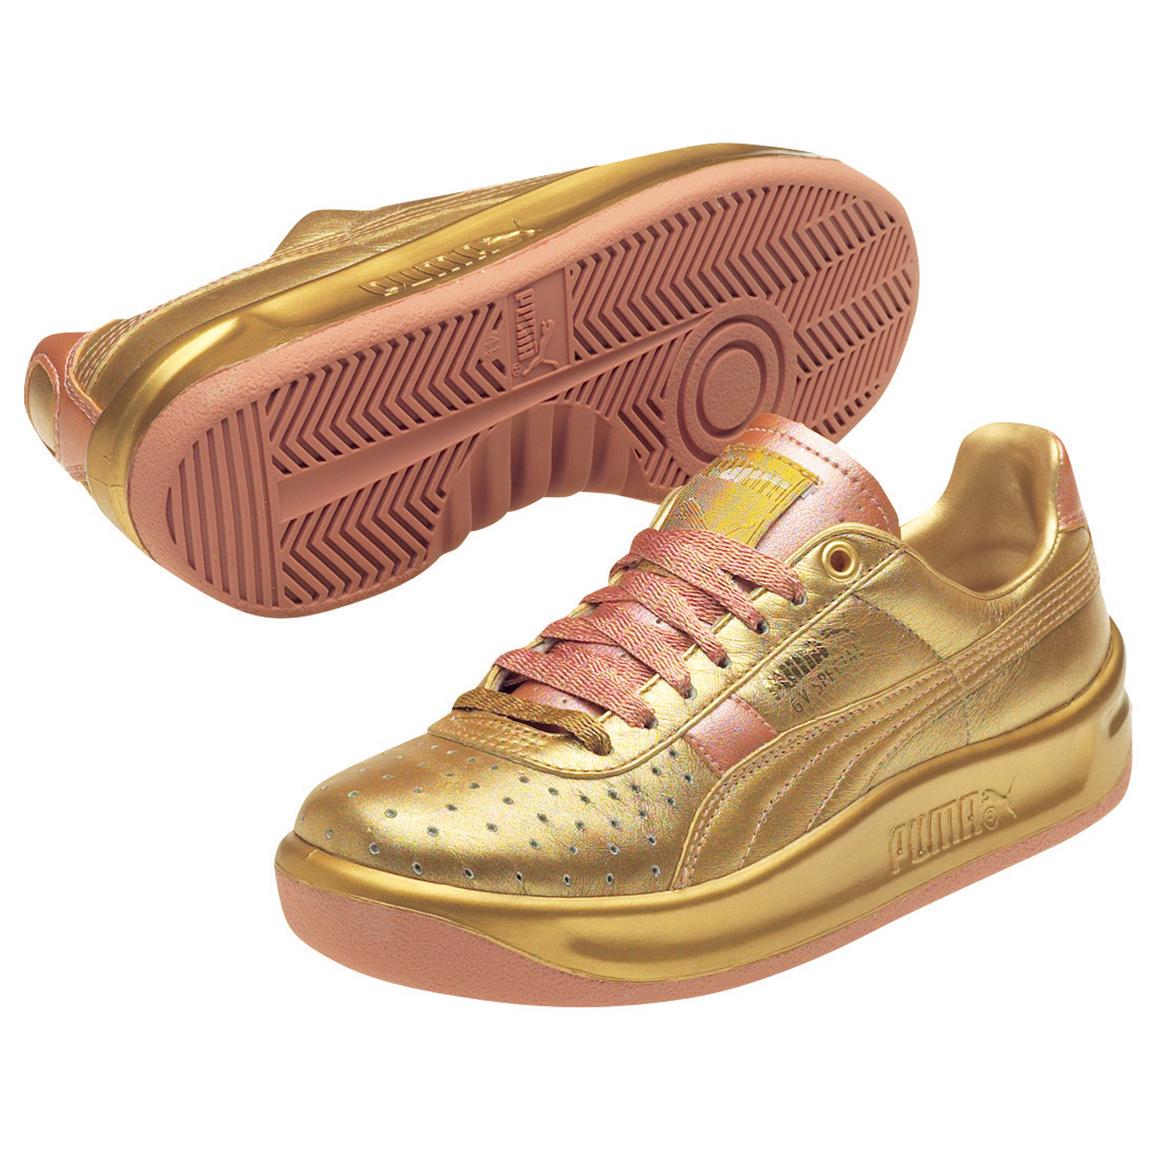 metallic tennis shoes